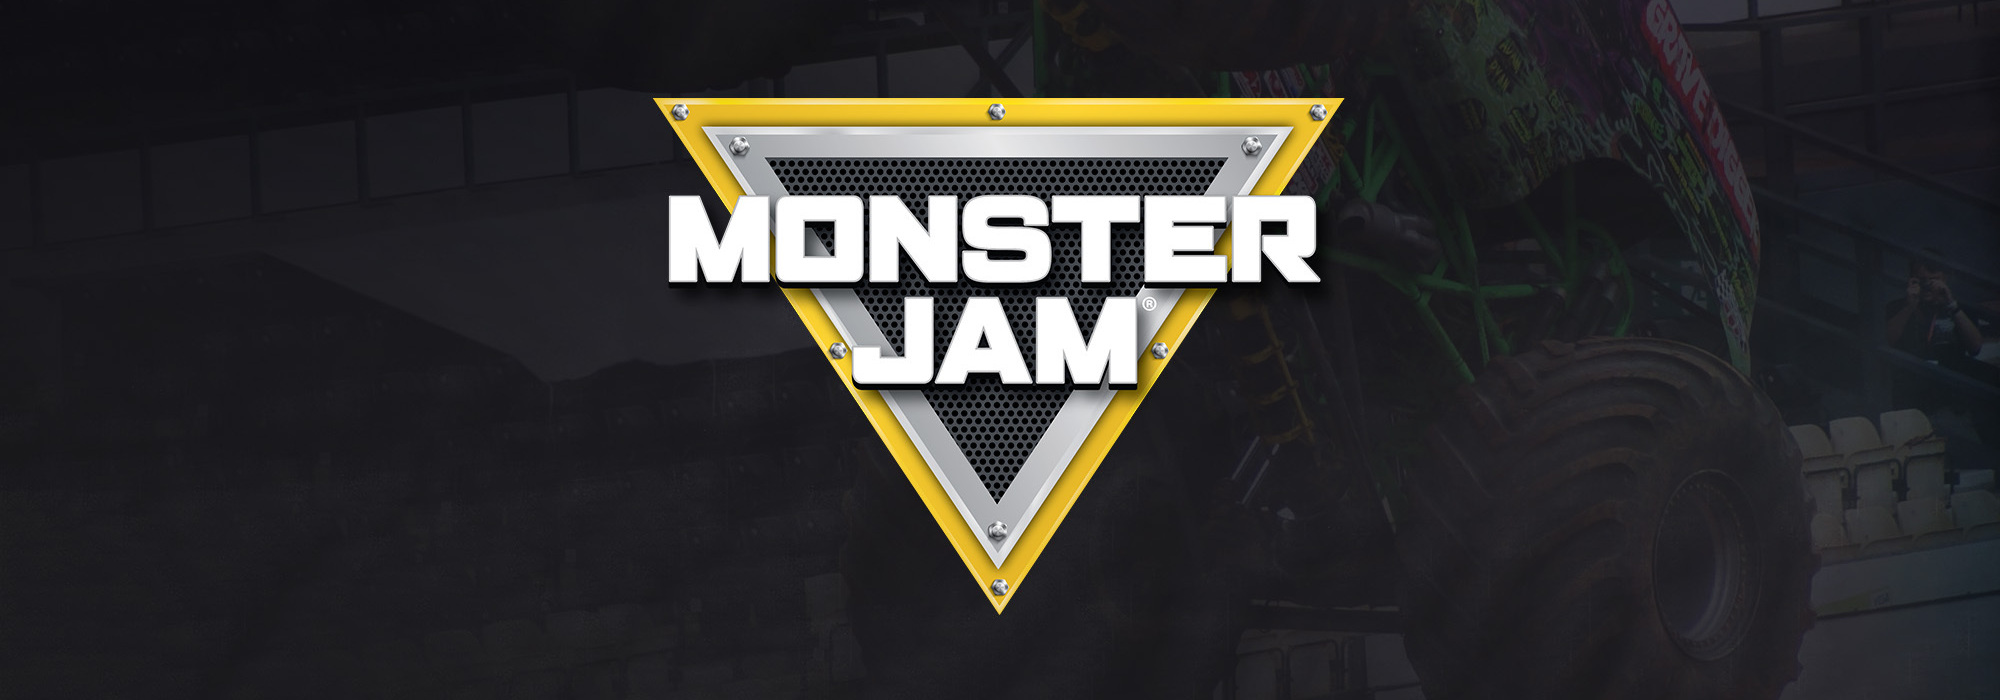 A Monster Jam live event